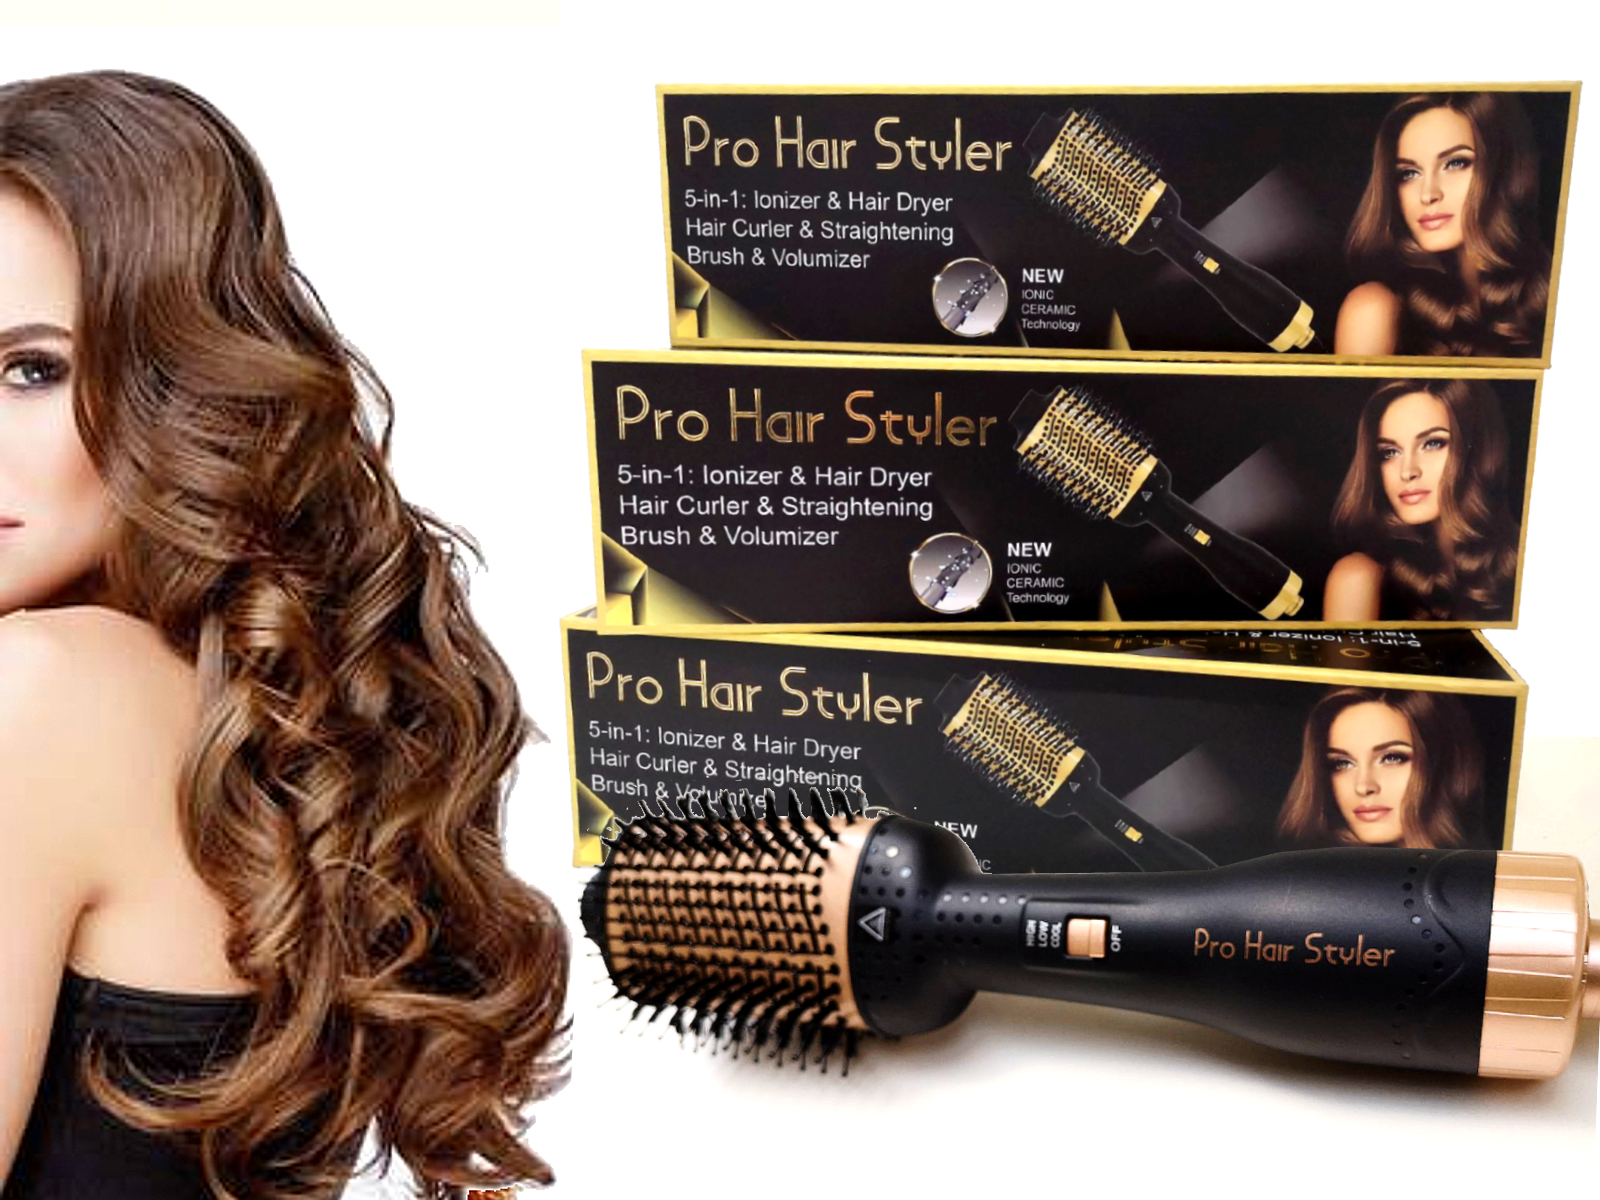 Pro Hair Styler 5 In 1 Ionizer Hair Dryer Hair Curler Straightening Brush Volumizer,Learn How To Crochet Easy